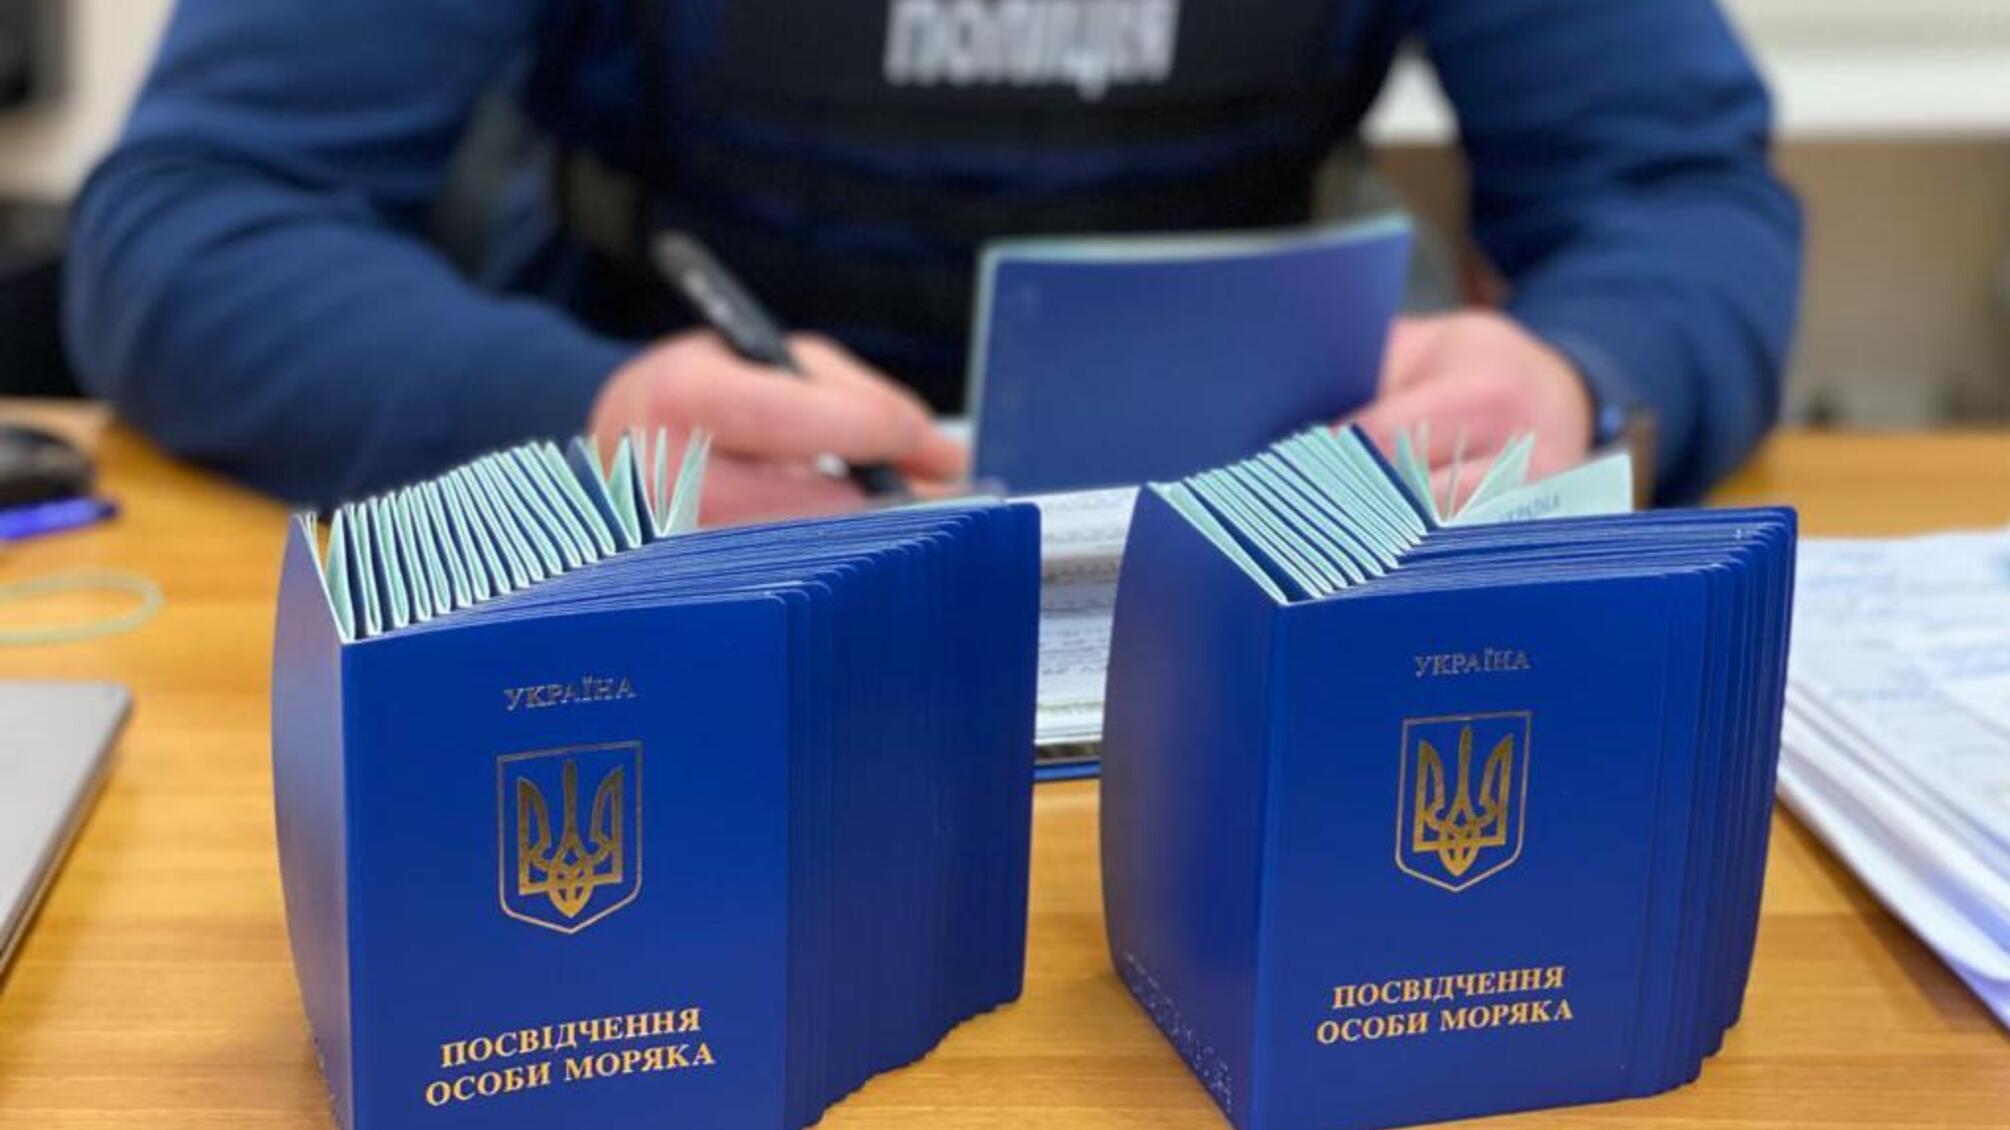 Незаконно продовжували перебування українських моряків за кордоном: на Одещині викрили схему підробки документів